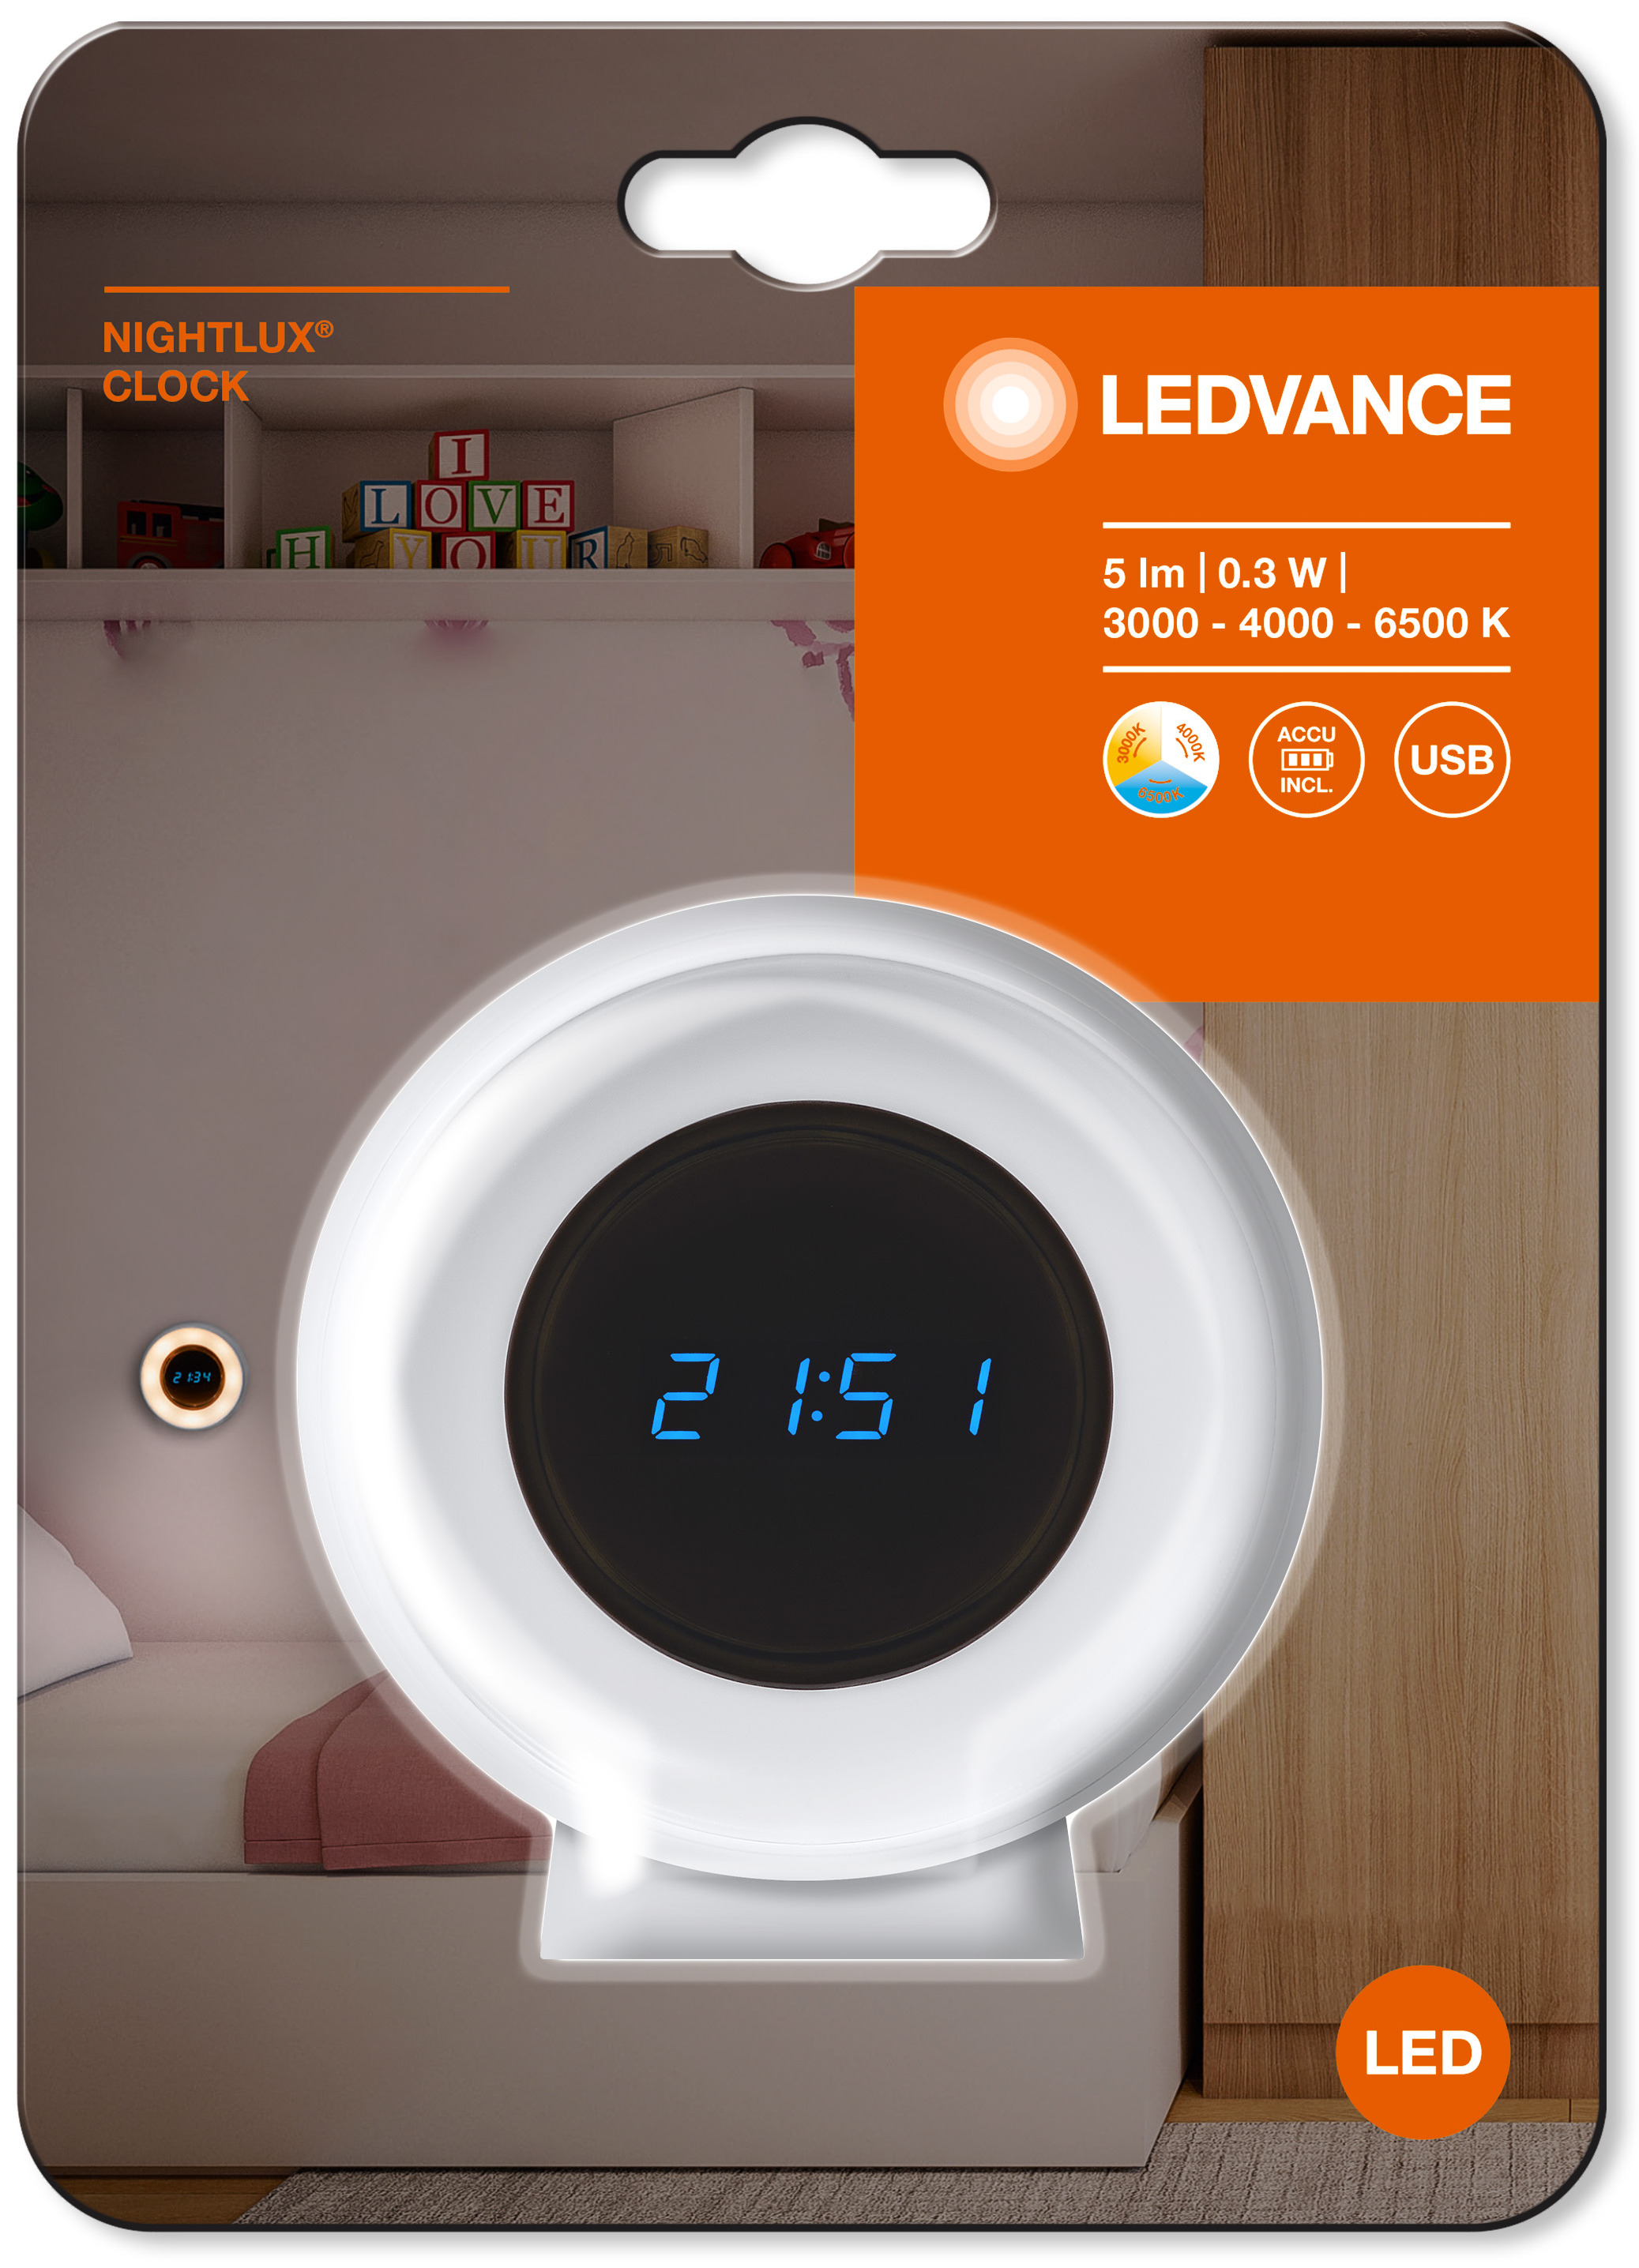 Светодиодные часы Ledvance Nighlux Clock Wt (4058075757721) инструкция - изображение 6